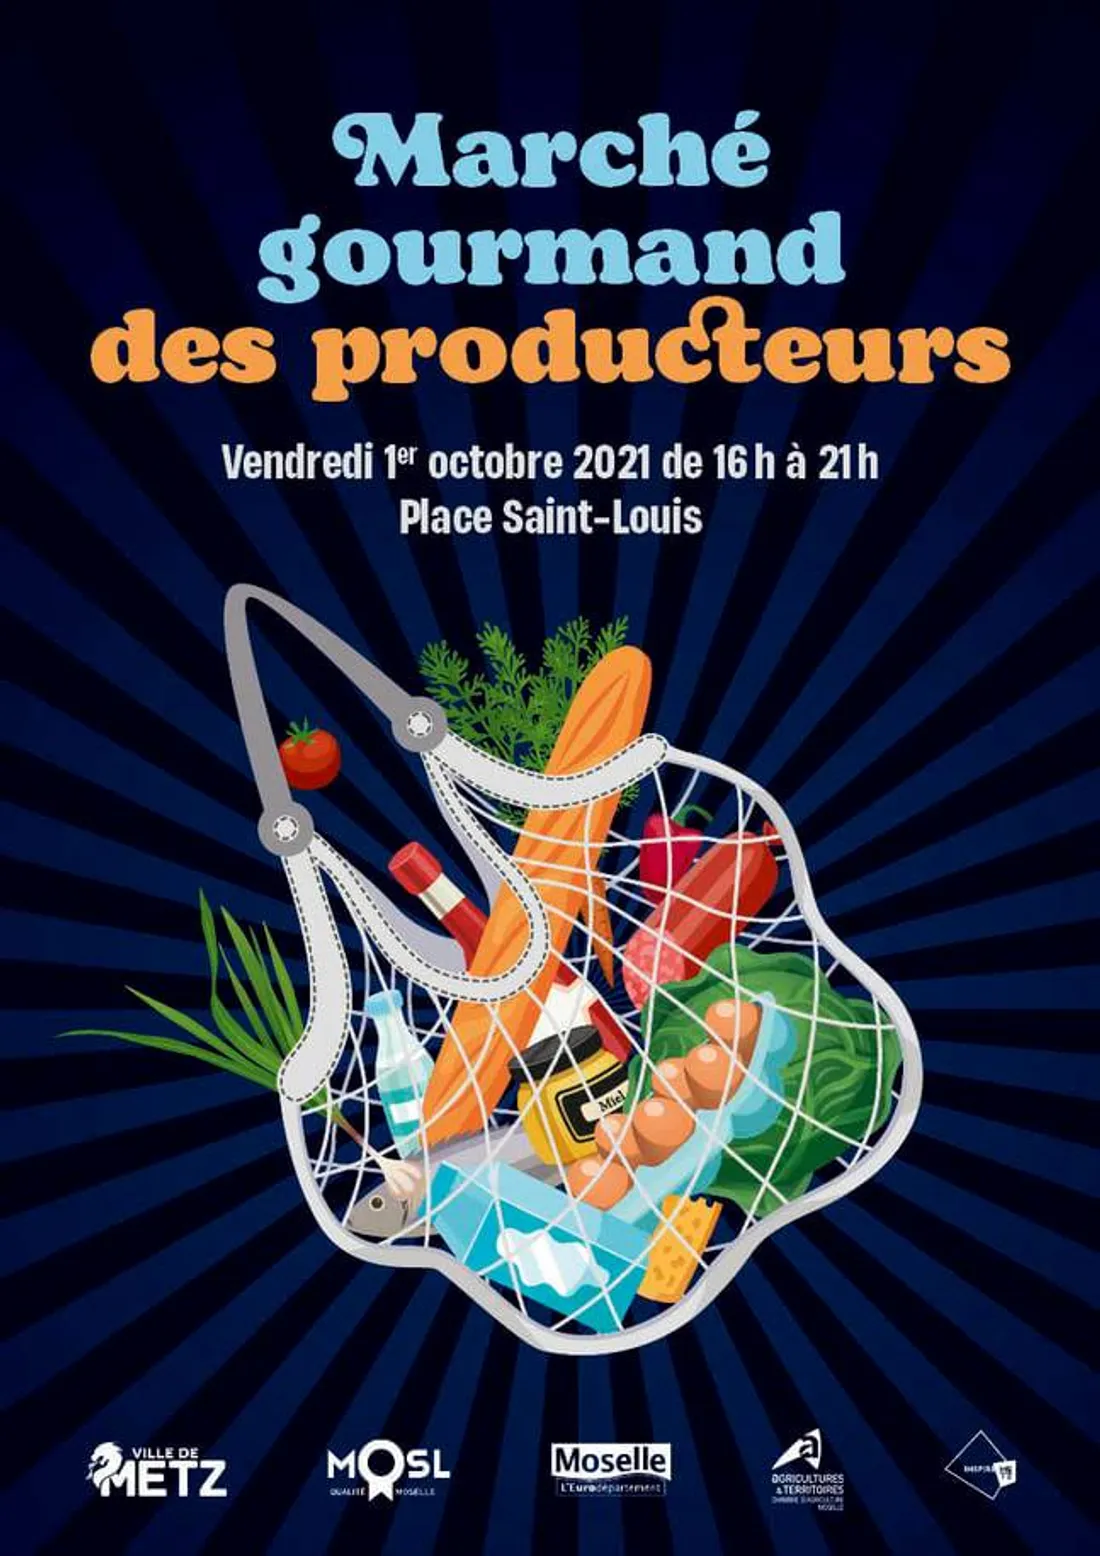 Le « Marché Gourmand des producteurs » aura lieu ce vendredi 1er octobre